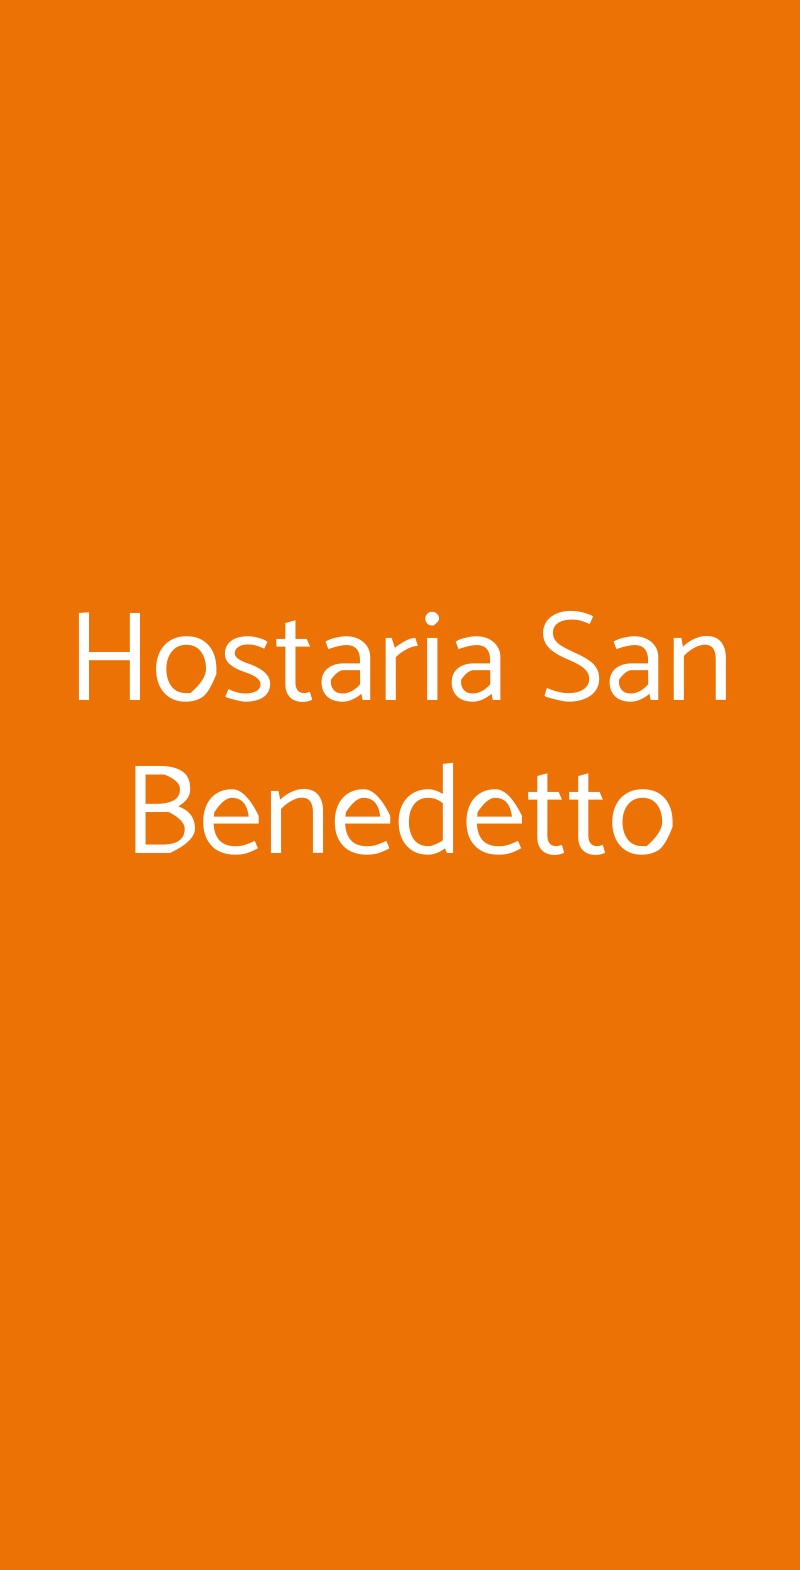 Hostaria San Benedetto Montagnana menù 1 pagina